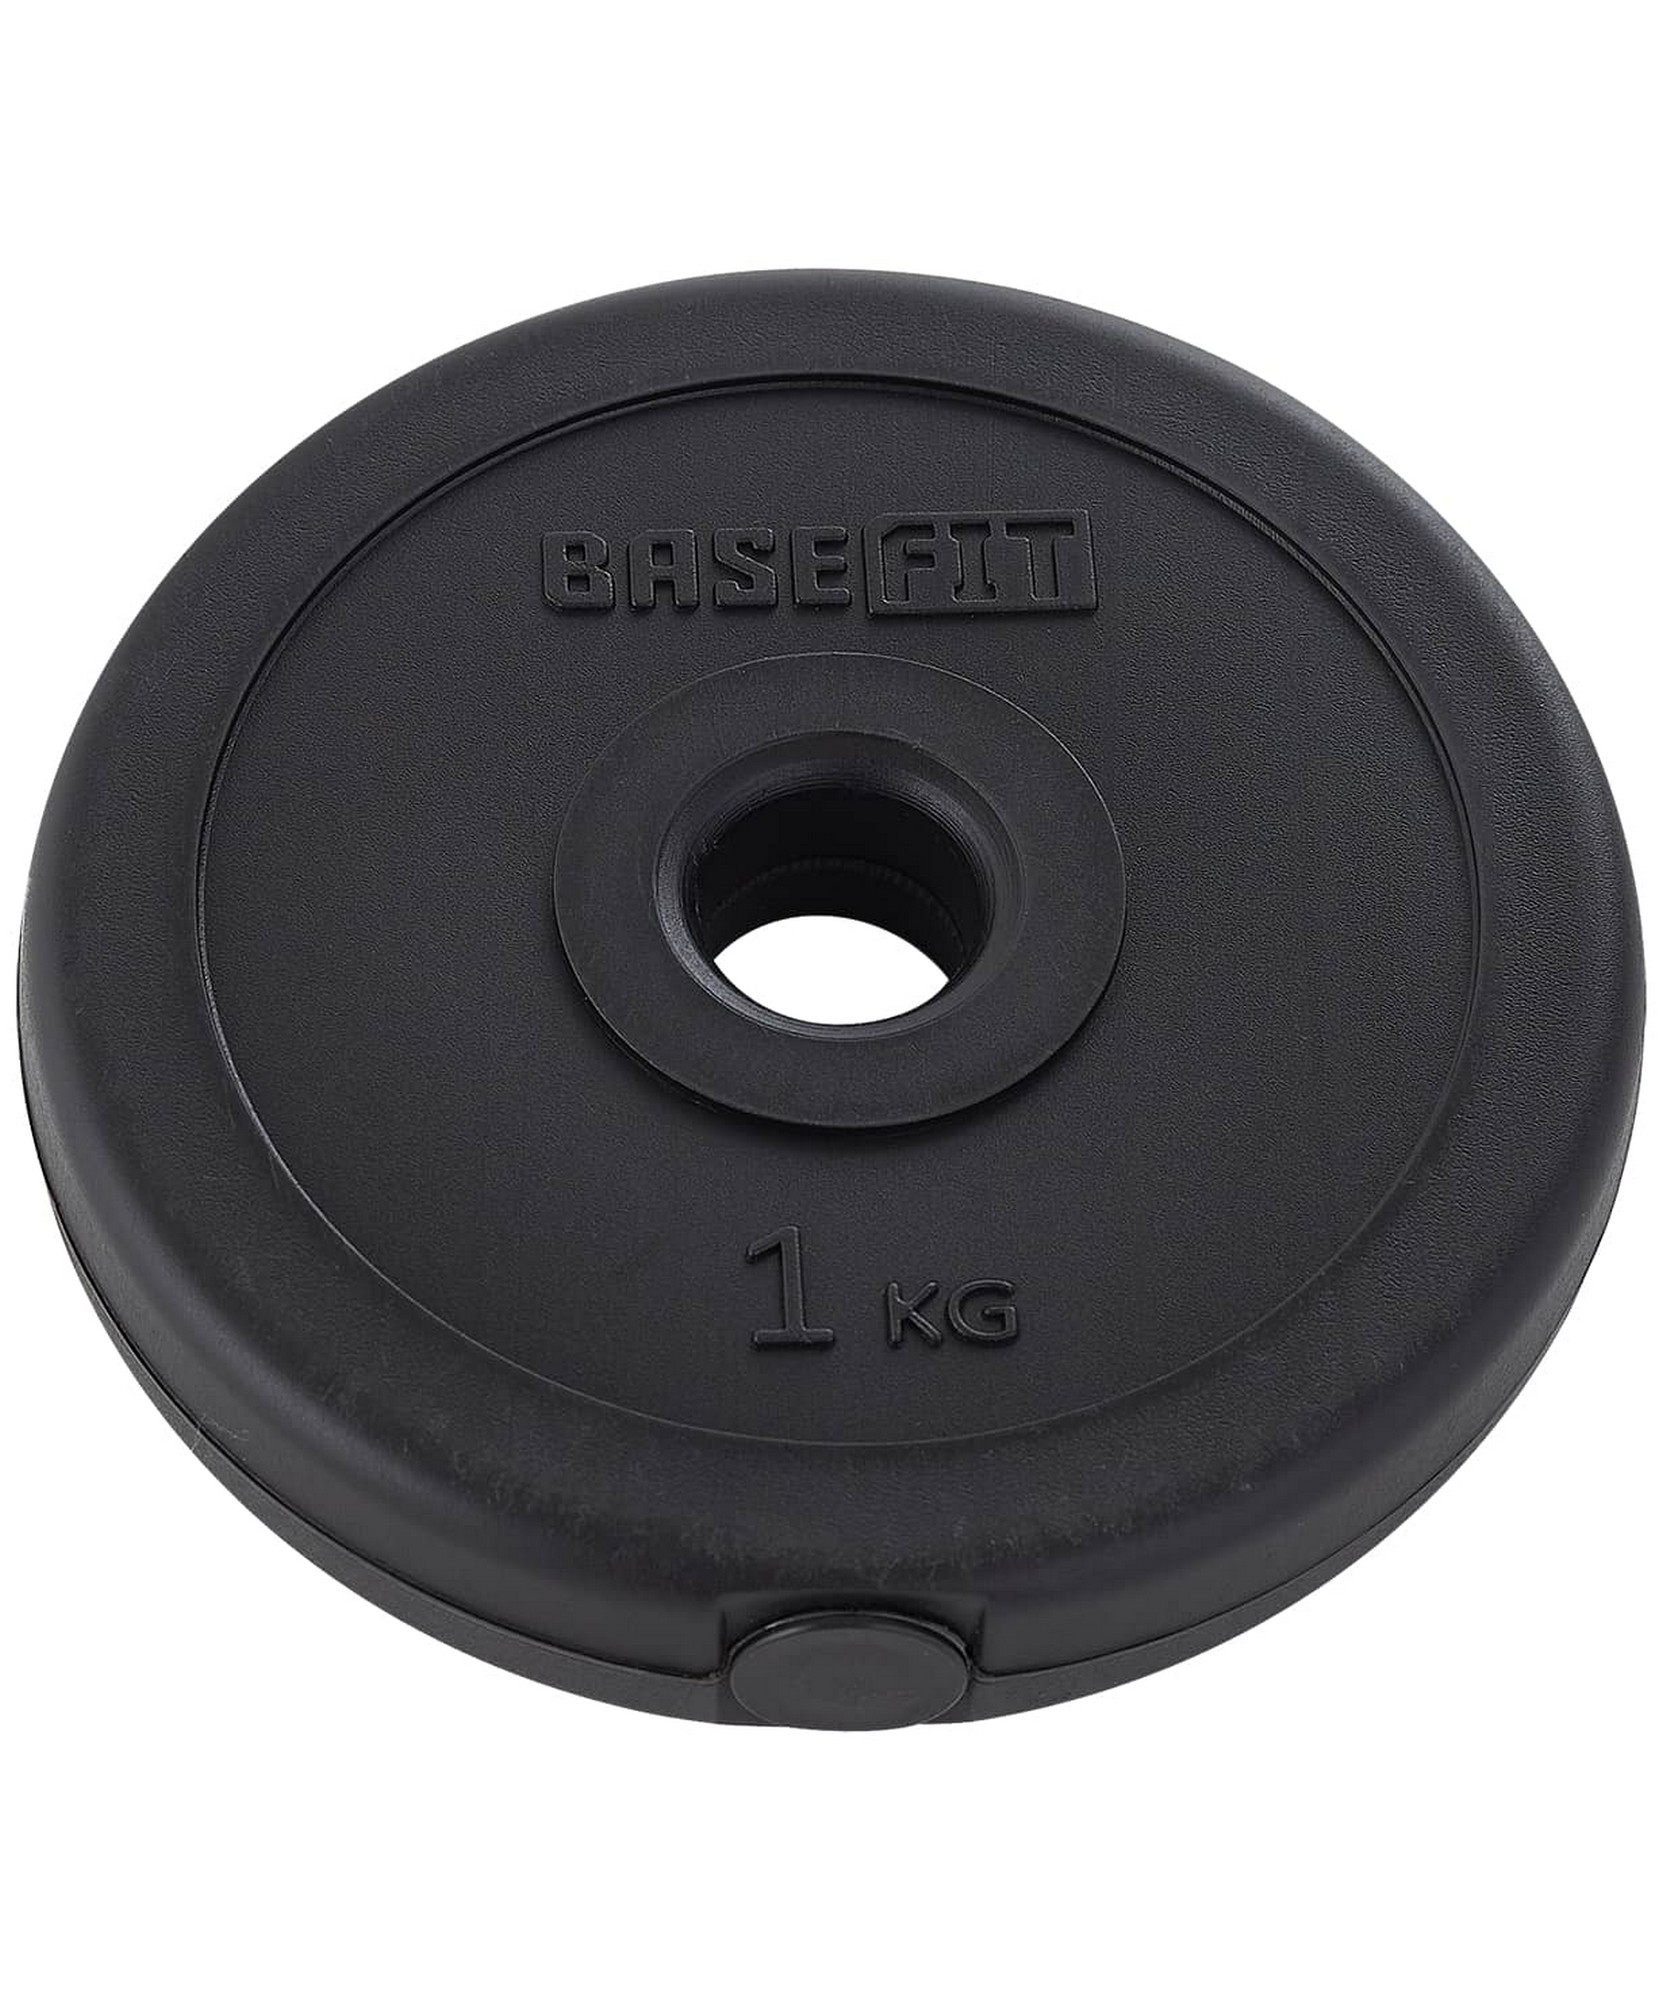 Диск пластиковый 1 кг BaseFit d26 мм BB-203 черный